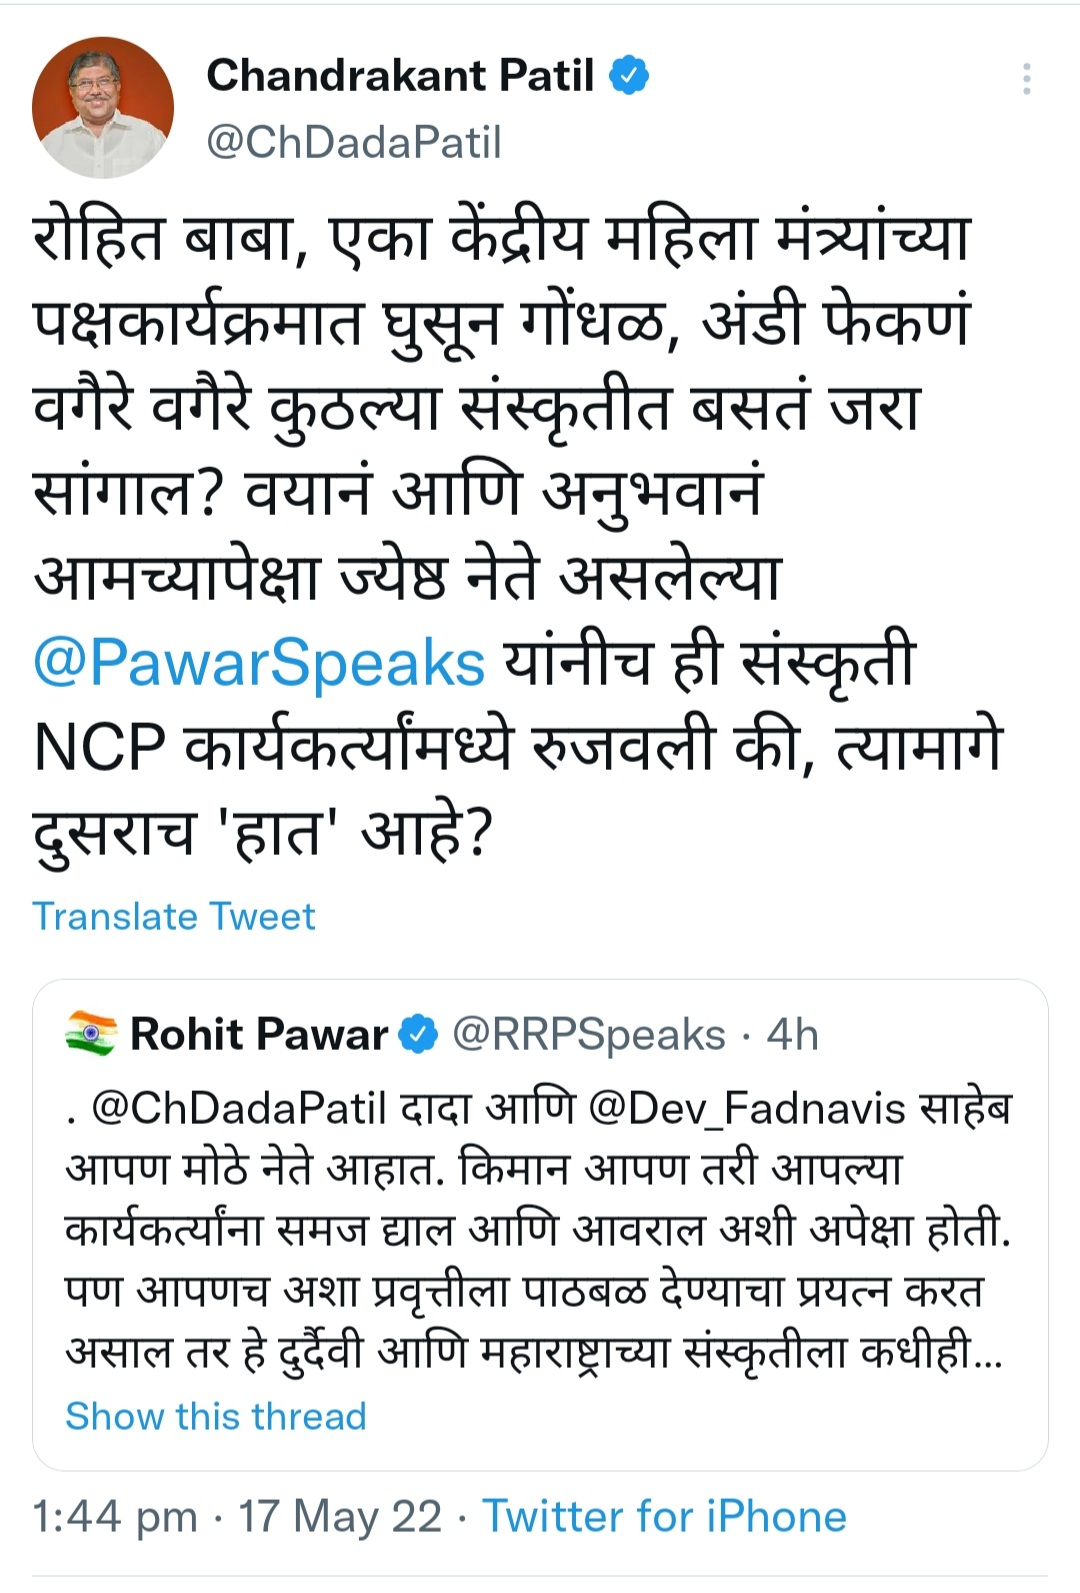 Chandrakantdada's tweet